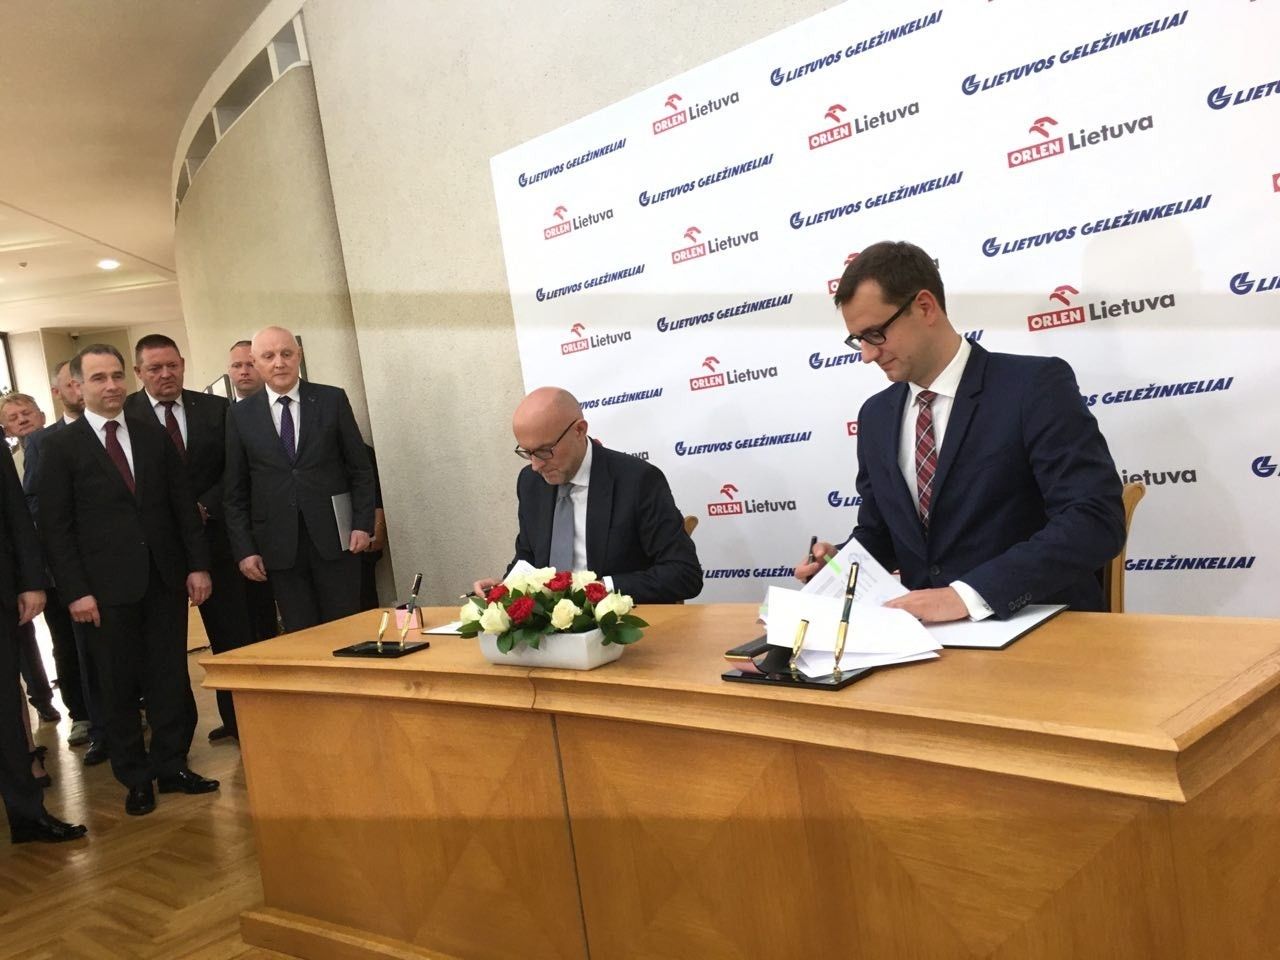 Podpisanie porozumienia ws. taryf przewozowych pomiędzy Orlen Lietuva i Litewskimi Kolejami Państwowymi. Fot. Energetyka24